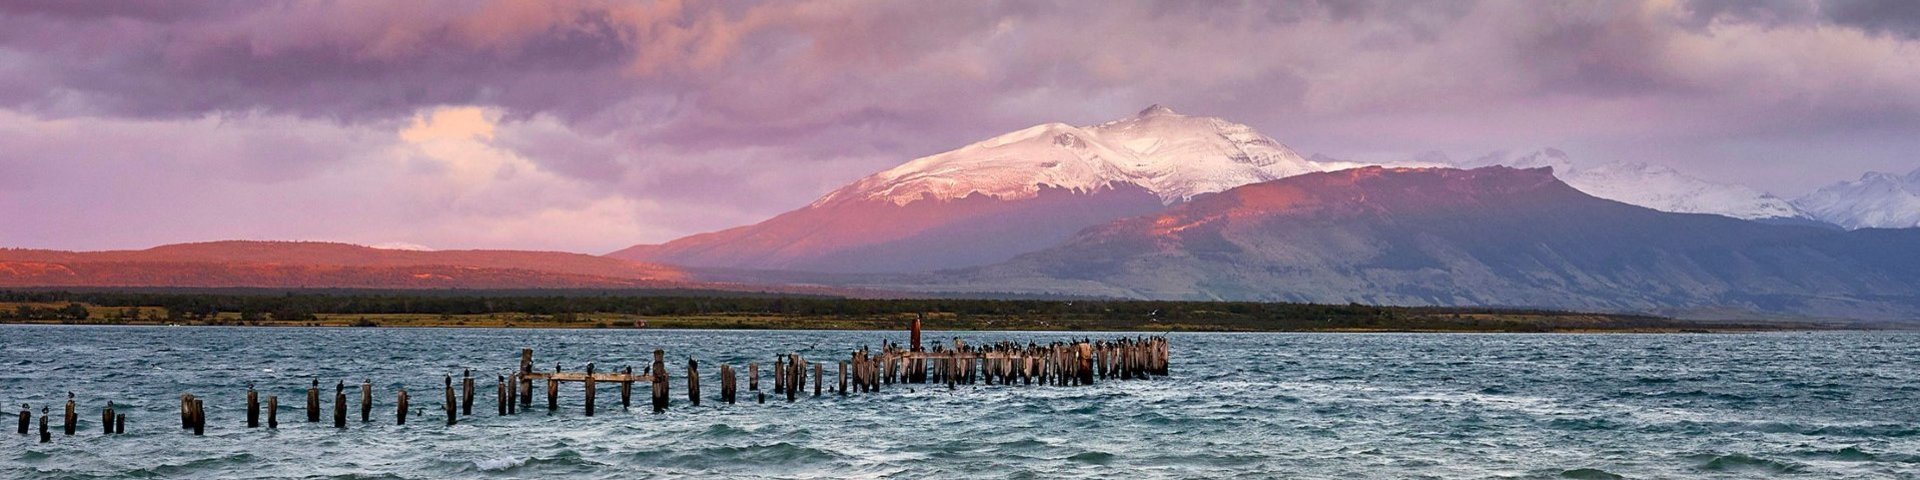 Bucht in Patagonien